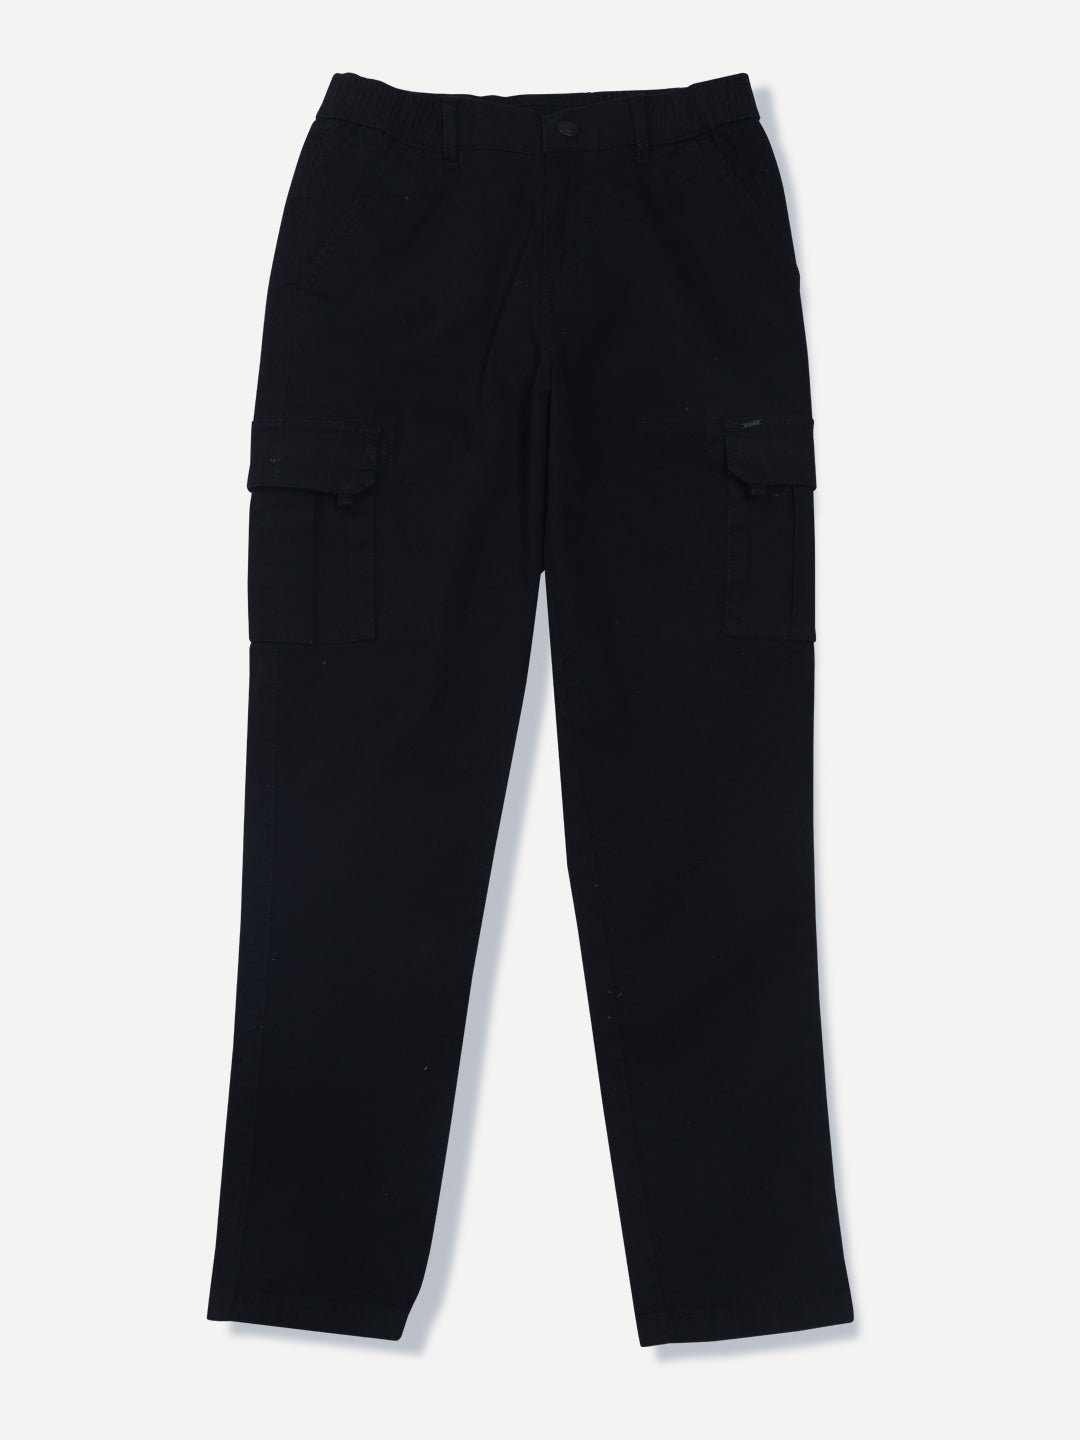 Akiihool Teen Boy Pants Trendy Boys Pull on Skinny Fit Stretch Pants for  Kids Loose Street Hop Dance (Black,4-5 Years) - Walmart.com